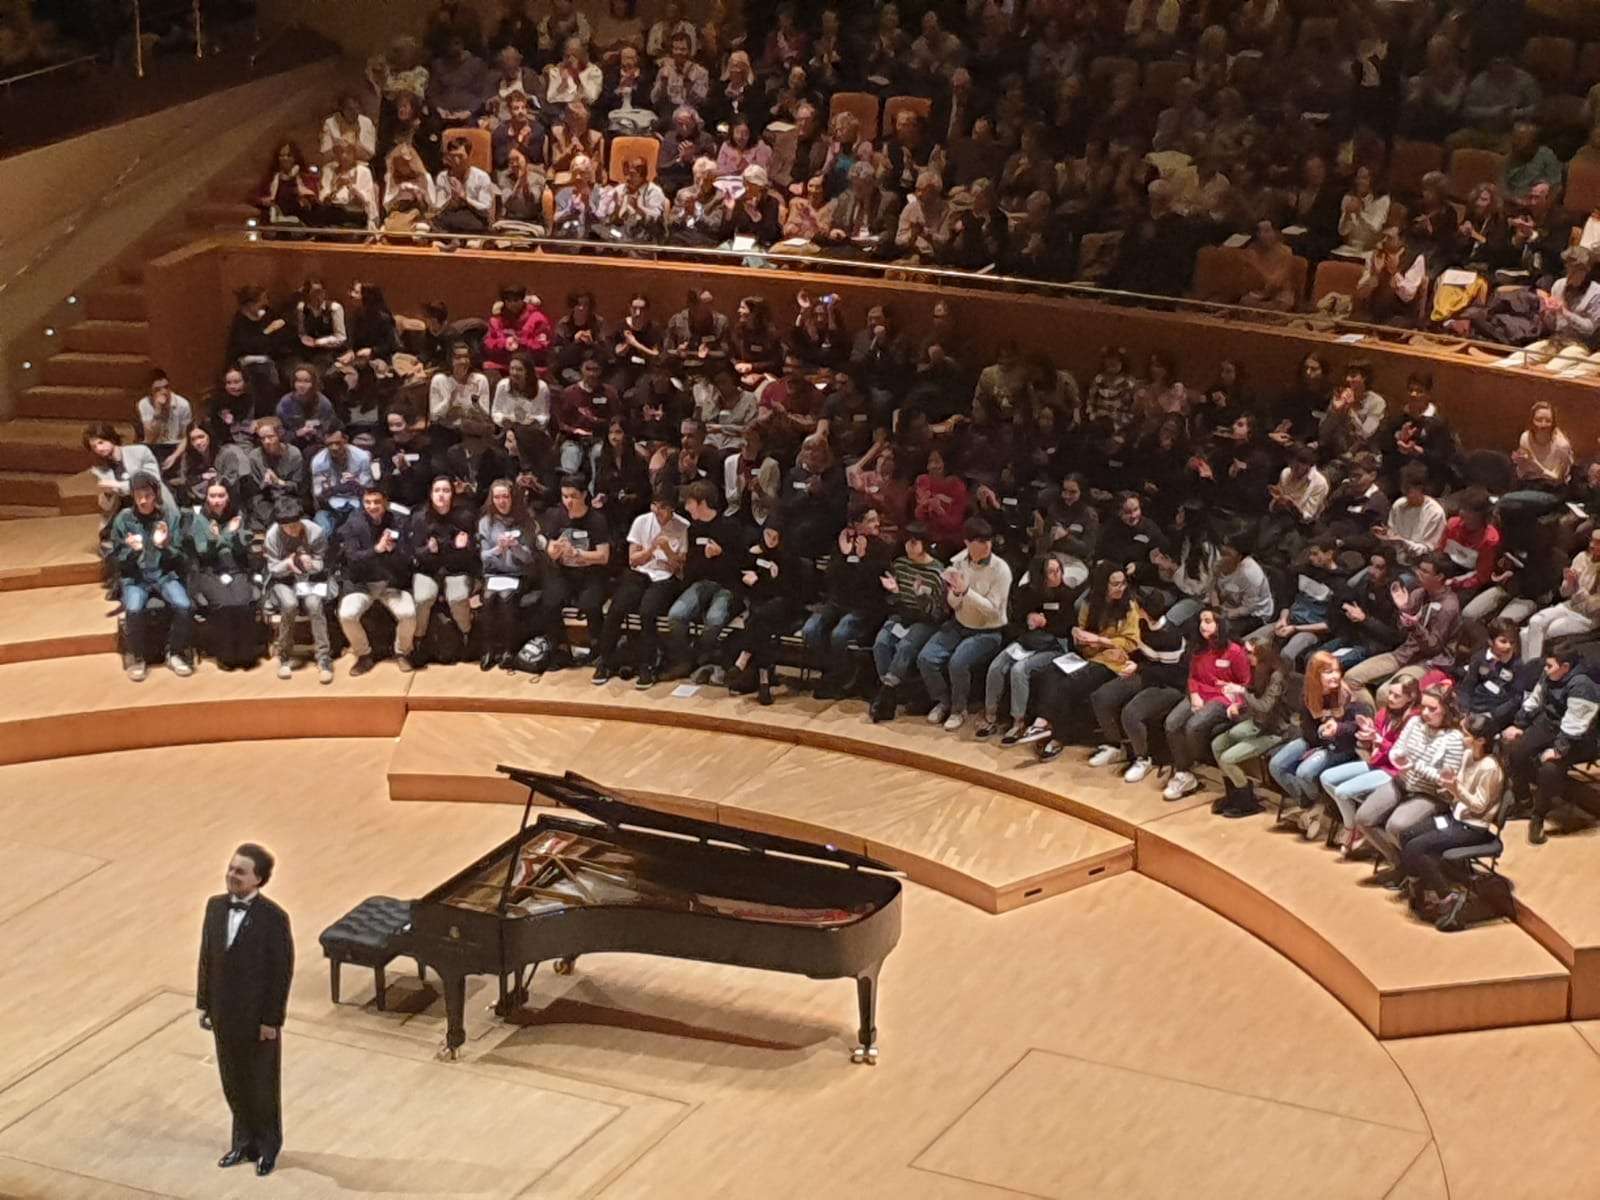 Asistencia al concierto del Pianista Evgeny Kissin en Madrid – Conservatorio Oficial de Música de Mérida "Esteban